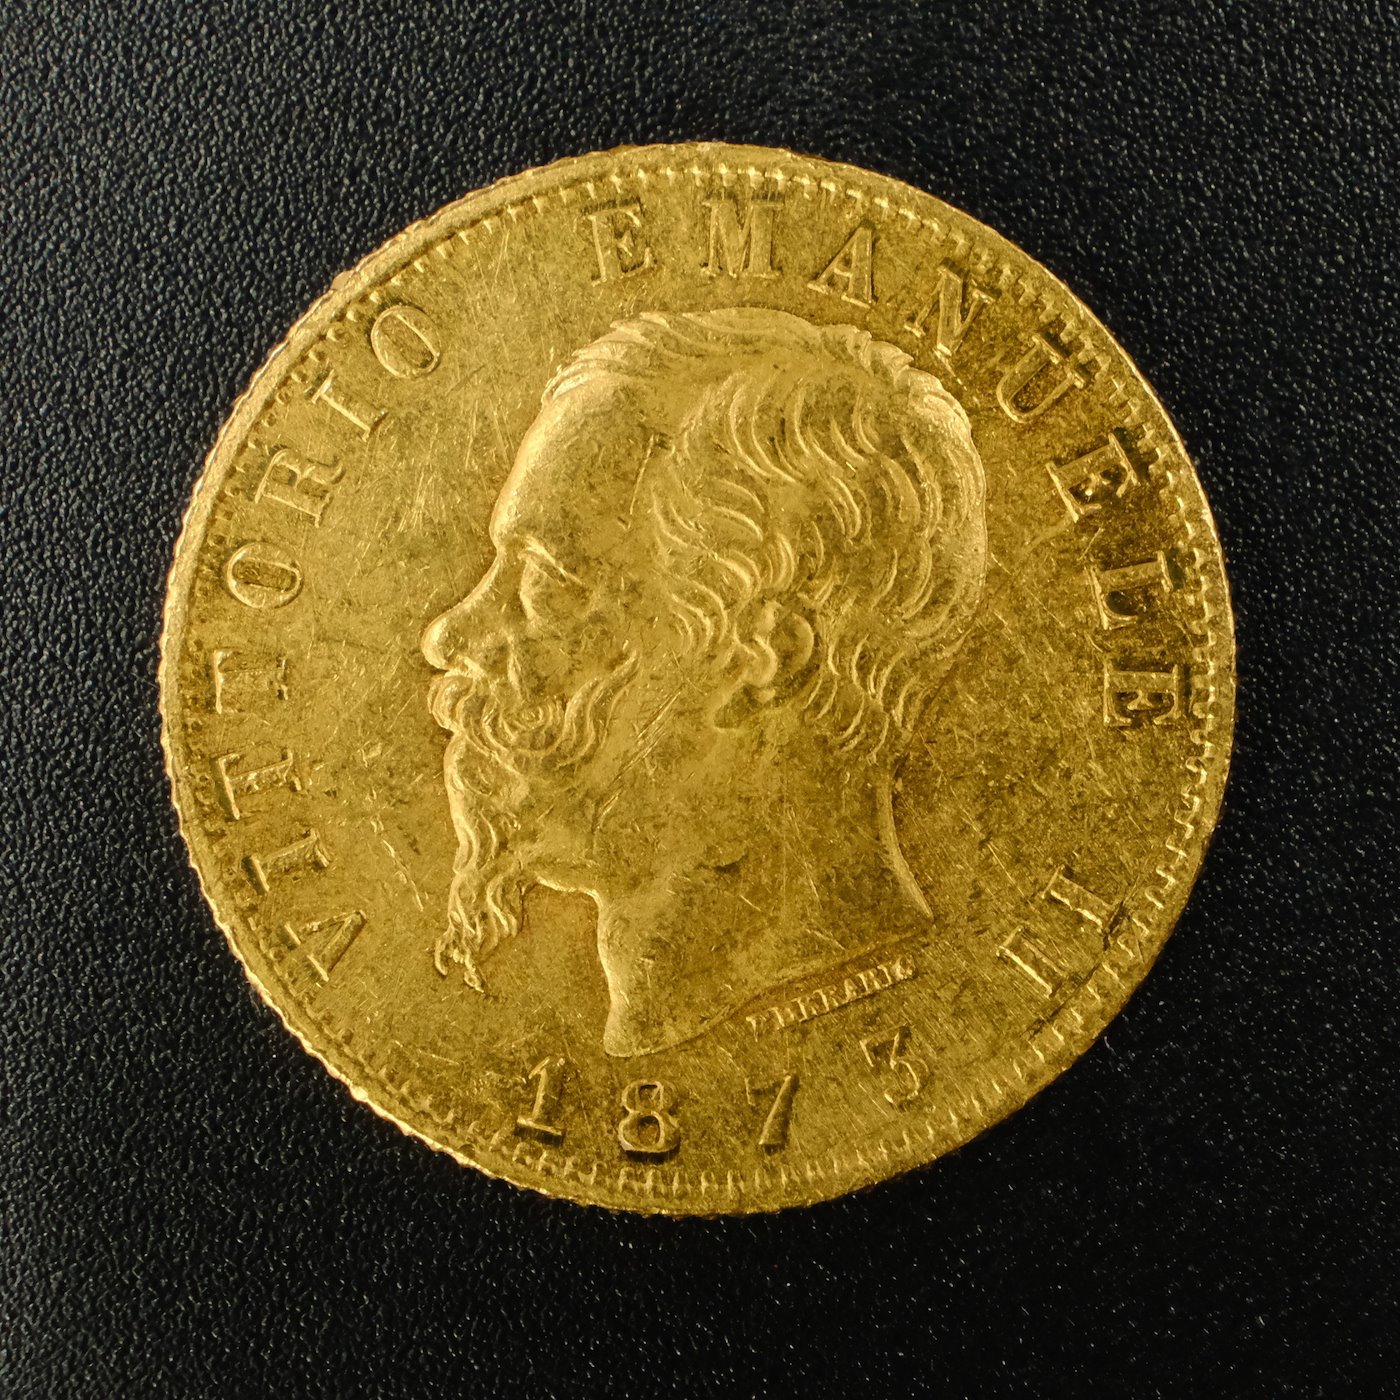 Mince - Zlatá 20 Lira. 1873 M BN  král Victor Emanuel II., zlato 900/1000, hmotnost hrubá 6,45g